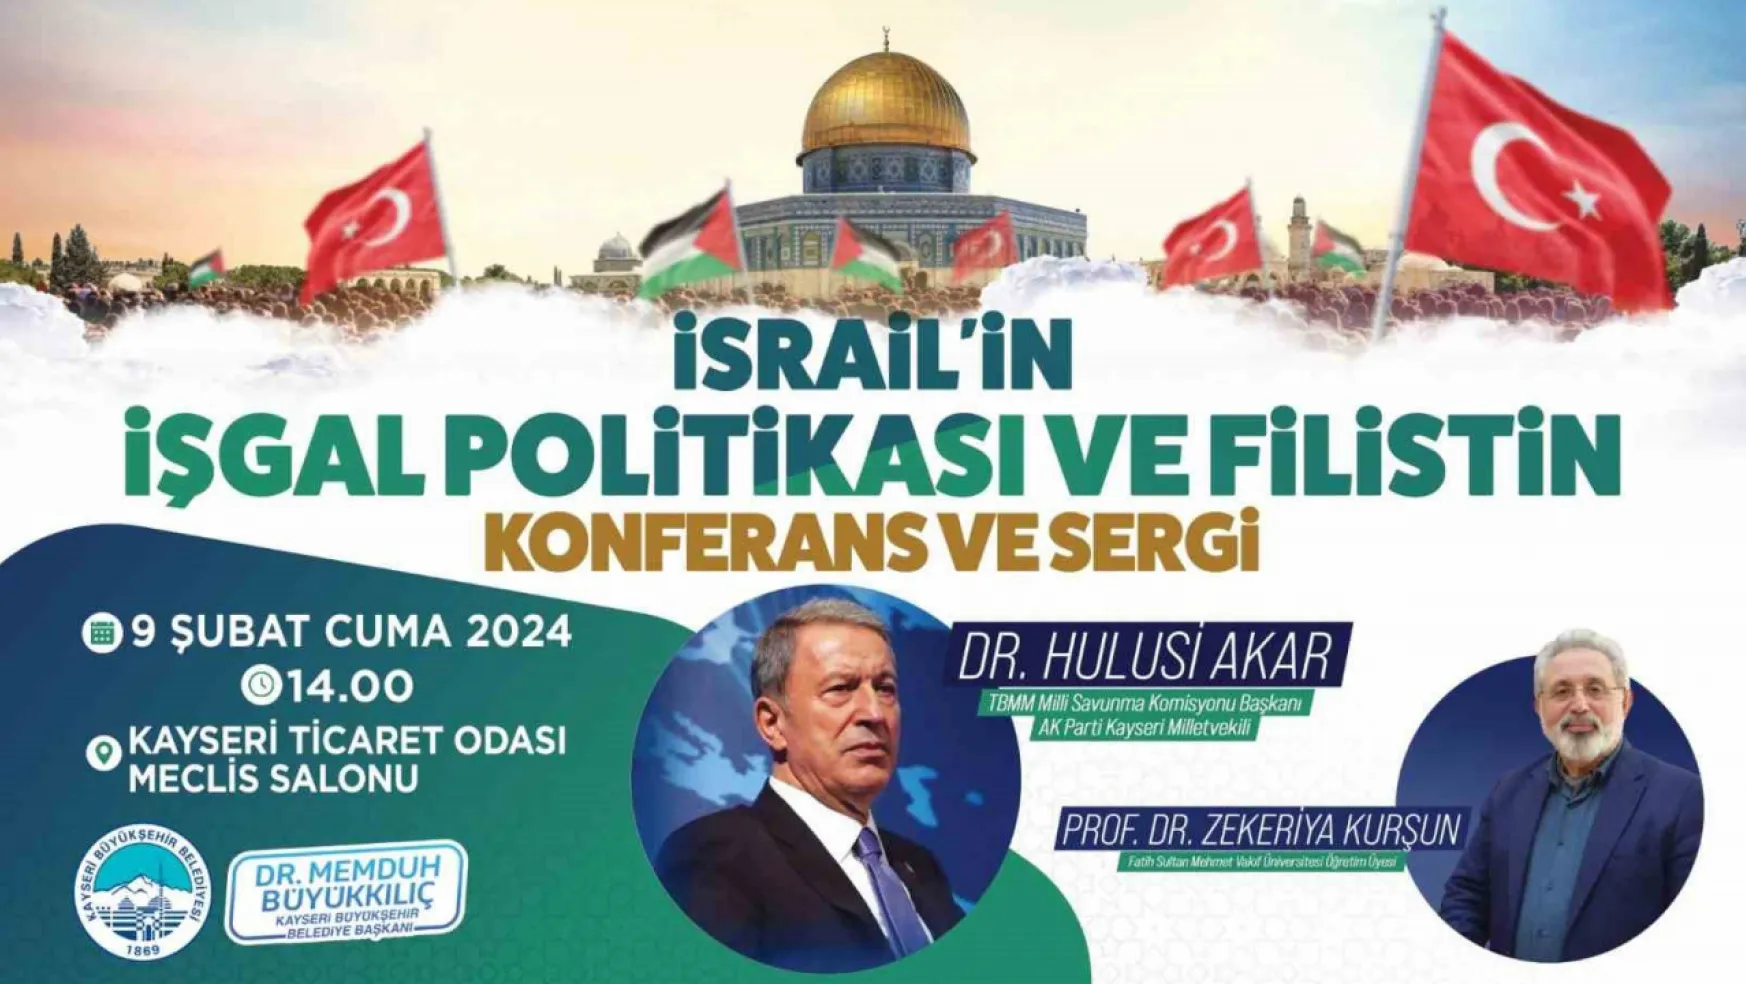 'İsrail'in İşgal Politikası ve Filistin' konulu konferans